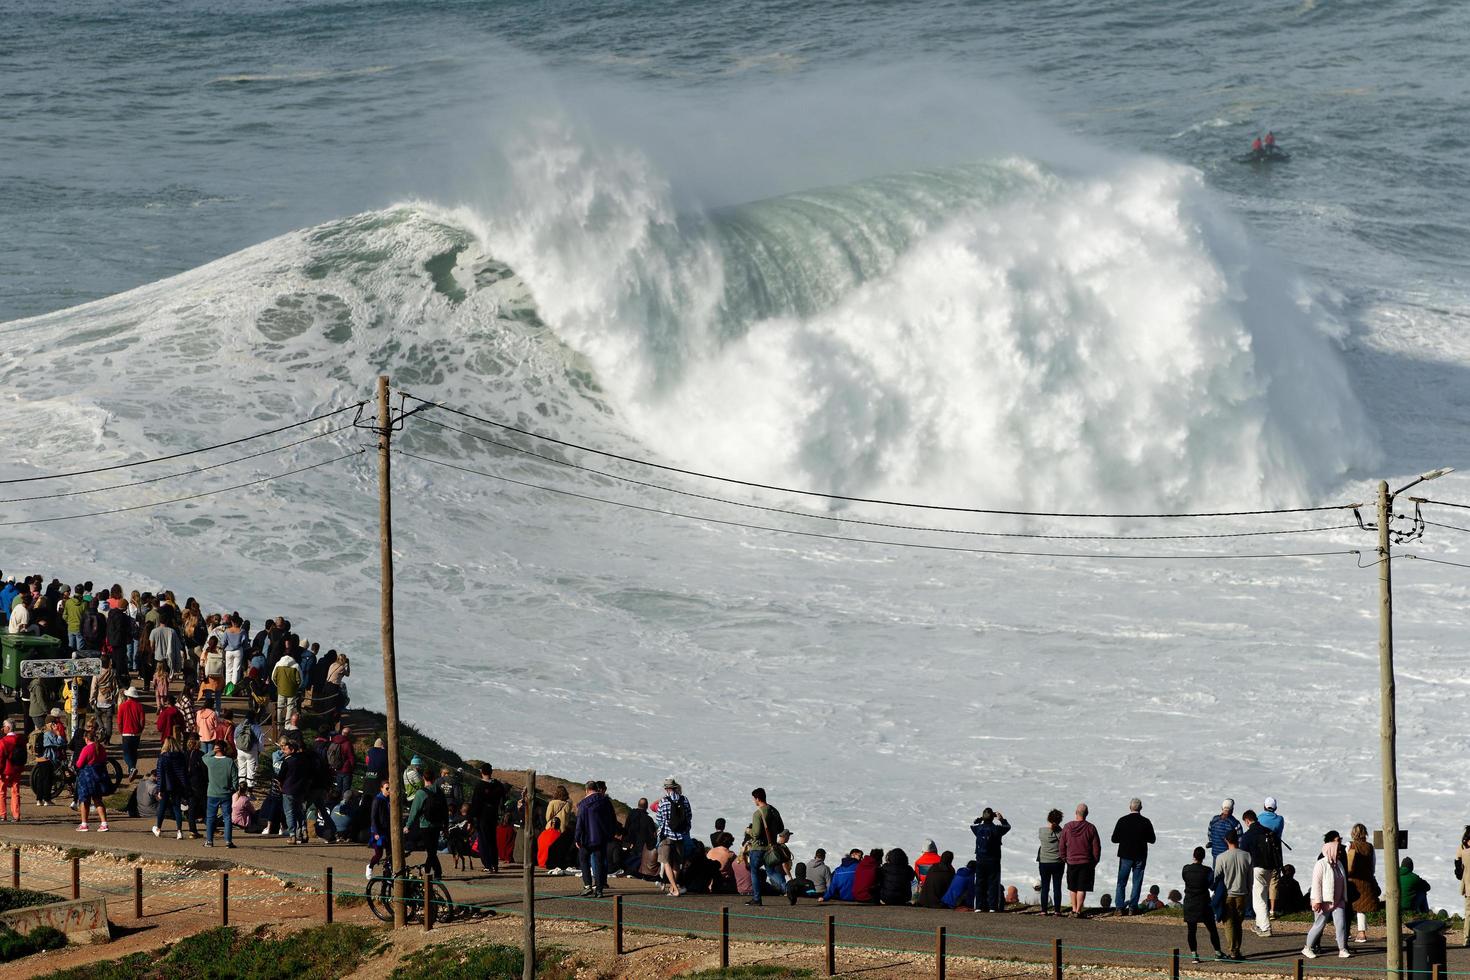 nazare, Portugal - november 7, 2022 mensen aan het kijken de groot reusachtig golven crashen in nazare, Portugal. grootste golven in de wereld. toeristisch bestemming voor surfen. foto